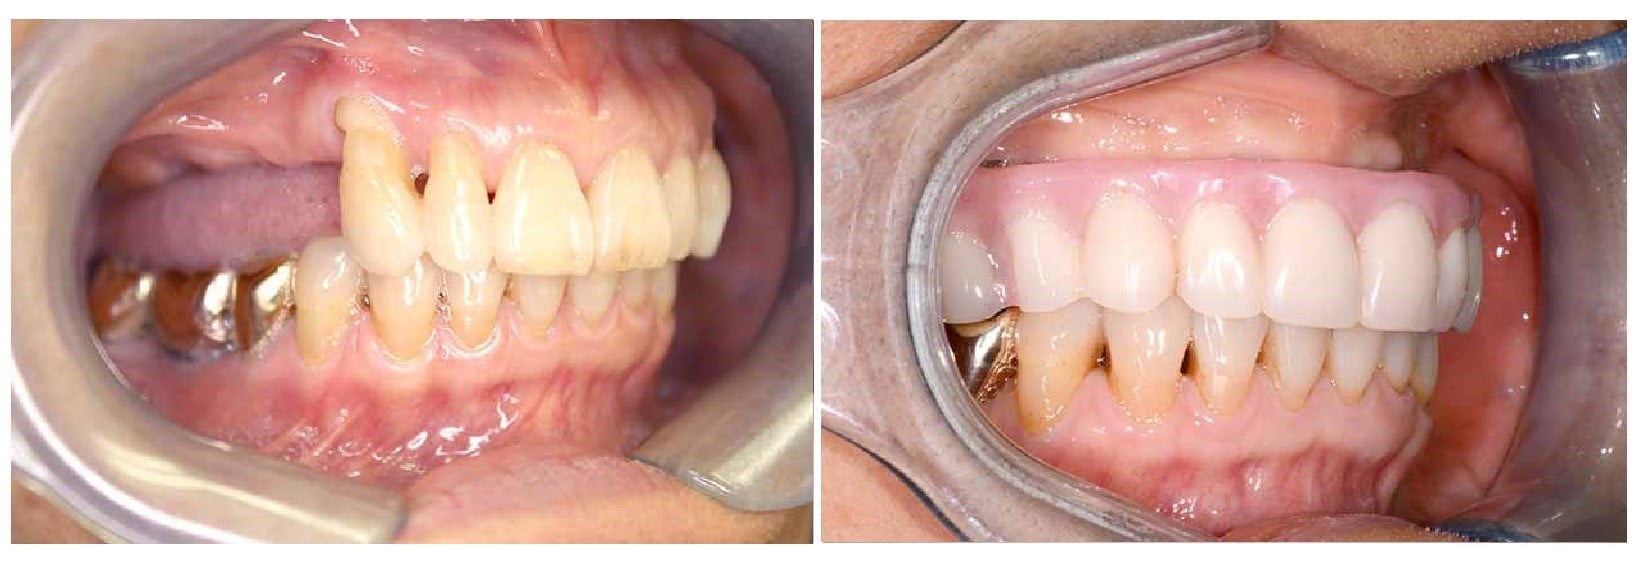 Условно-съемные зубные протезы на имплантах цена